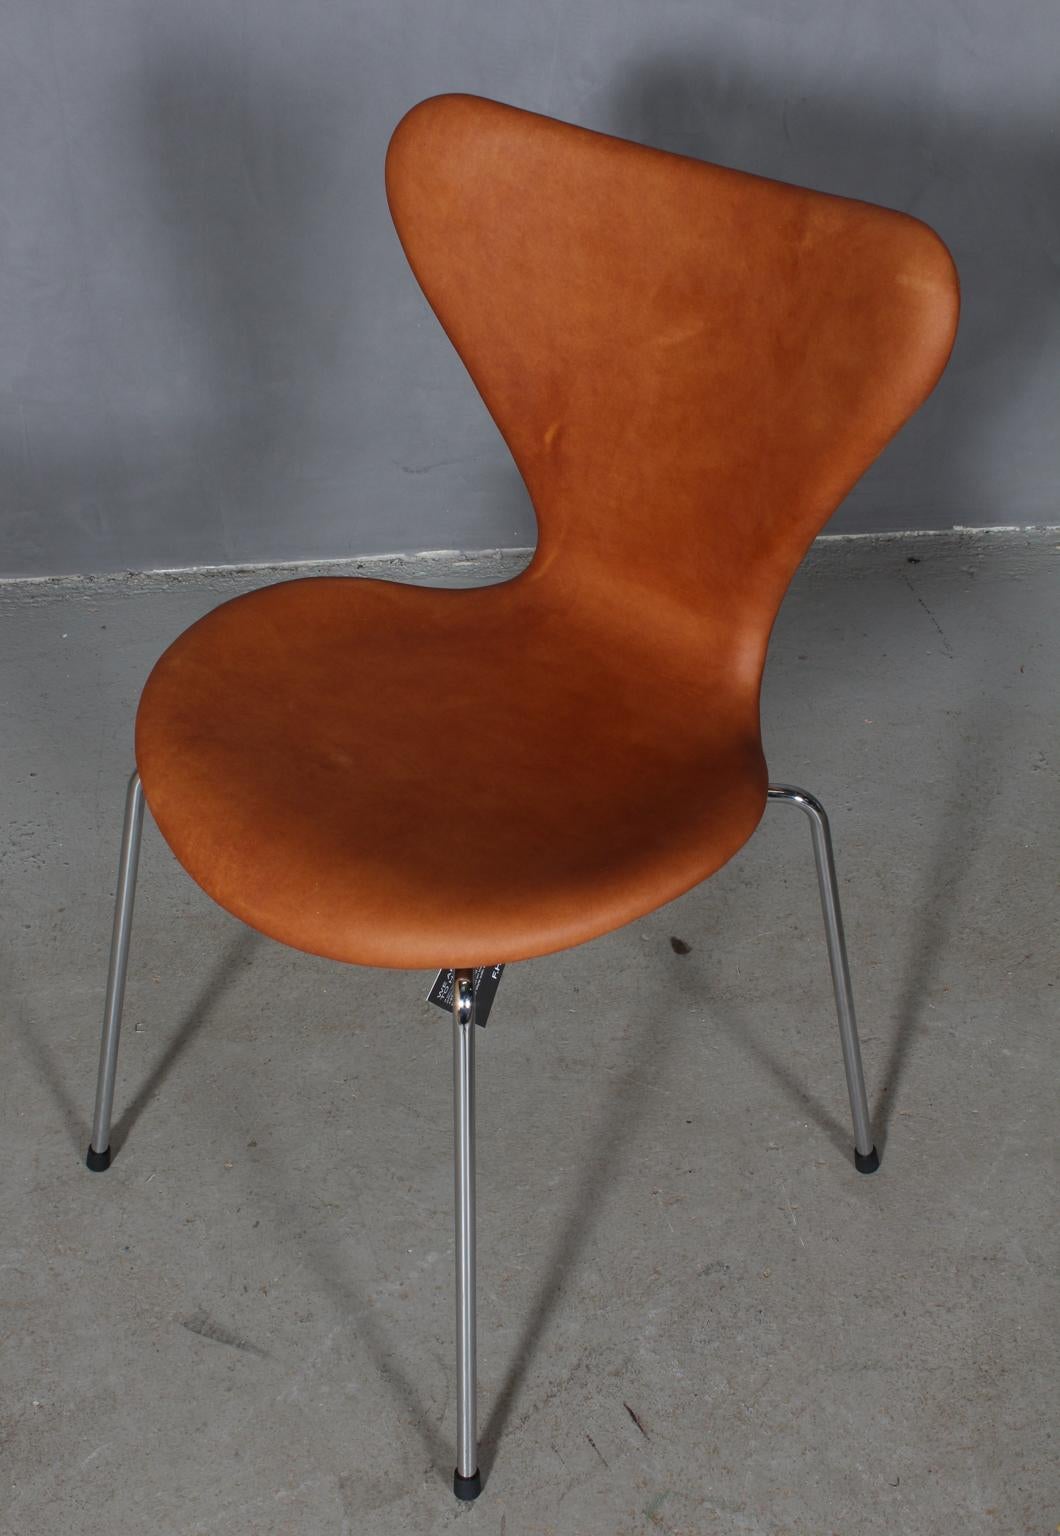 Chaise de salle à manger Arne Jacobsen recouverte de cuir aniline vintage.

Base en tube d'acier chromé.

Modèle 3107 Syveren, fabriqué par Fritz Hansen.

Coque neuve et base retapissée, avec certificat.